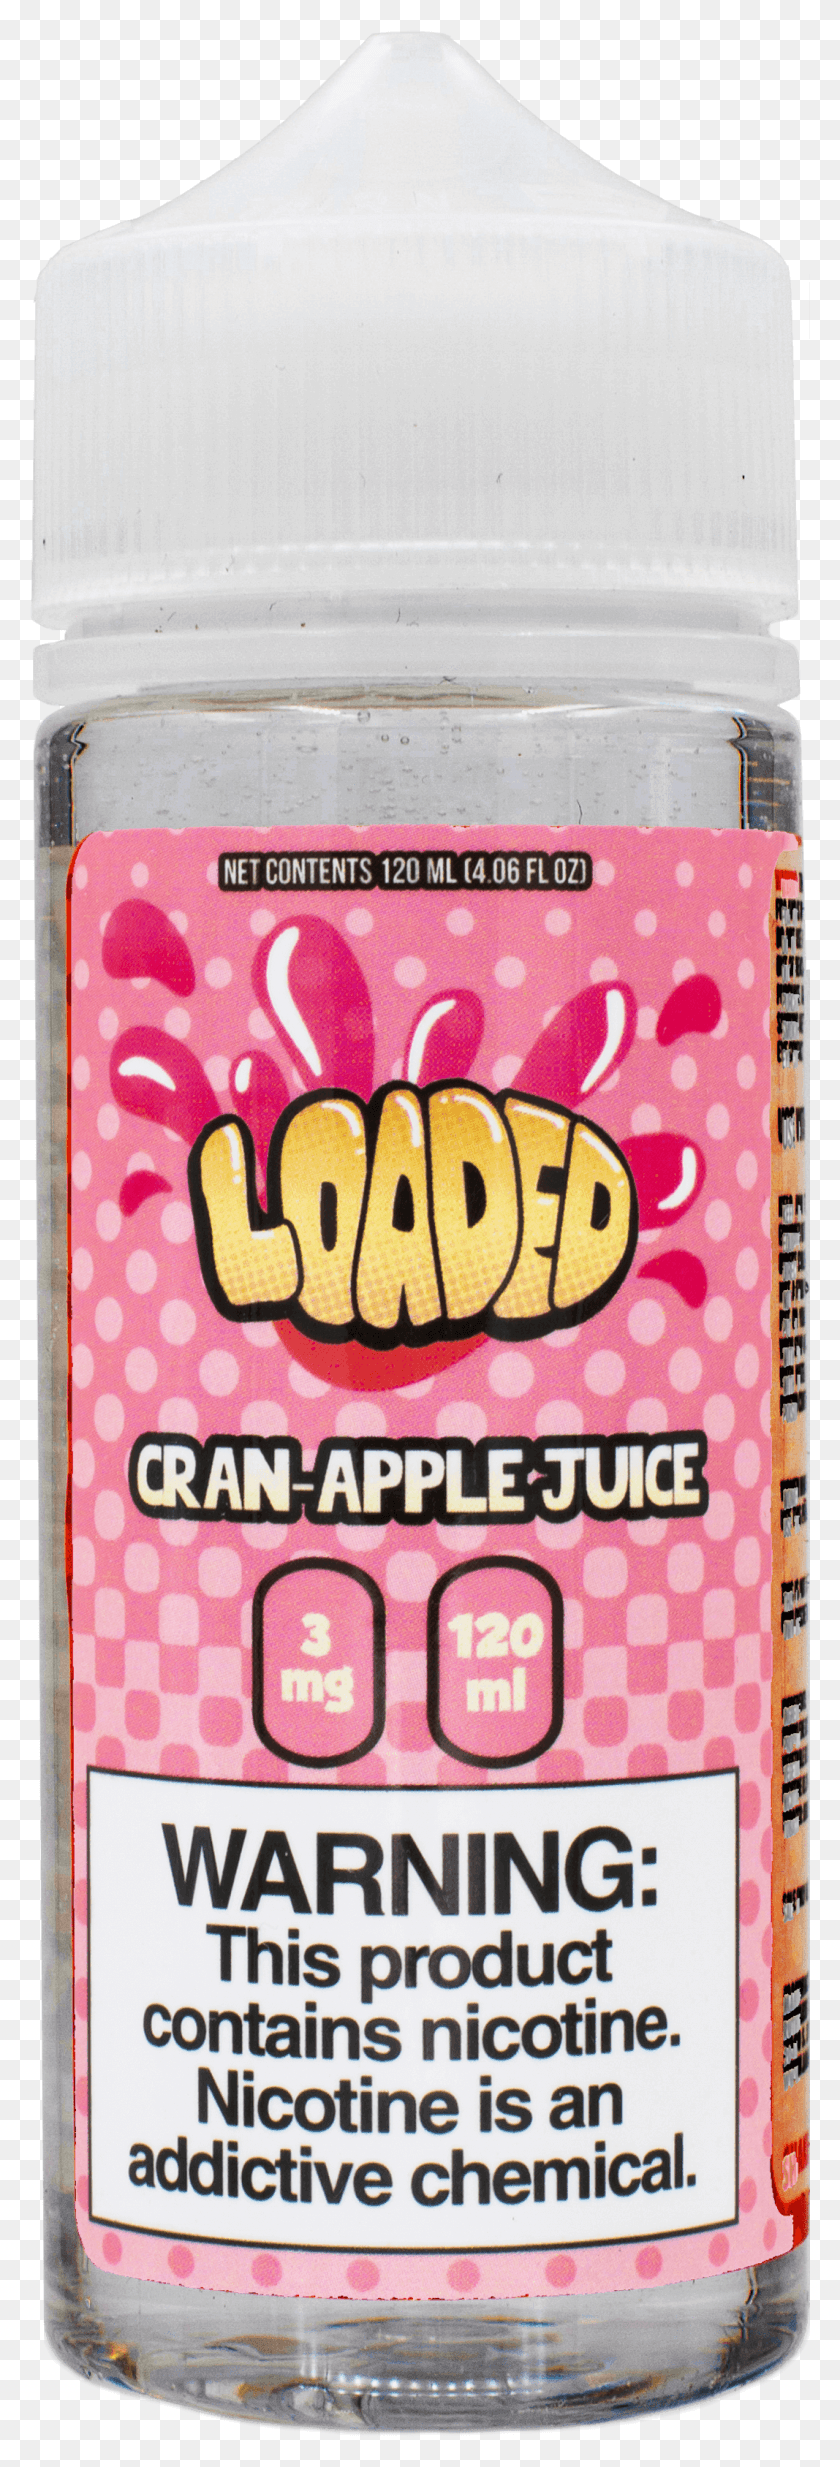 1067x3293 Cran Apple Cran Apple Juice, Текст, Этикетка, Дневник Hd Png Скачать